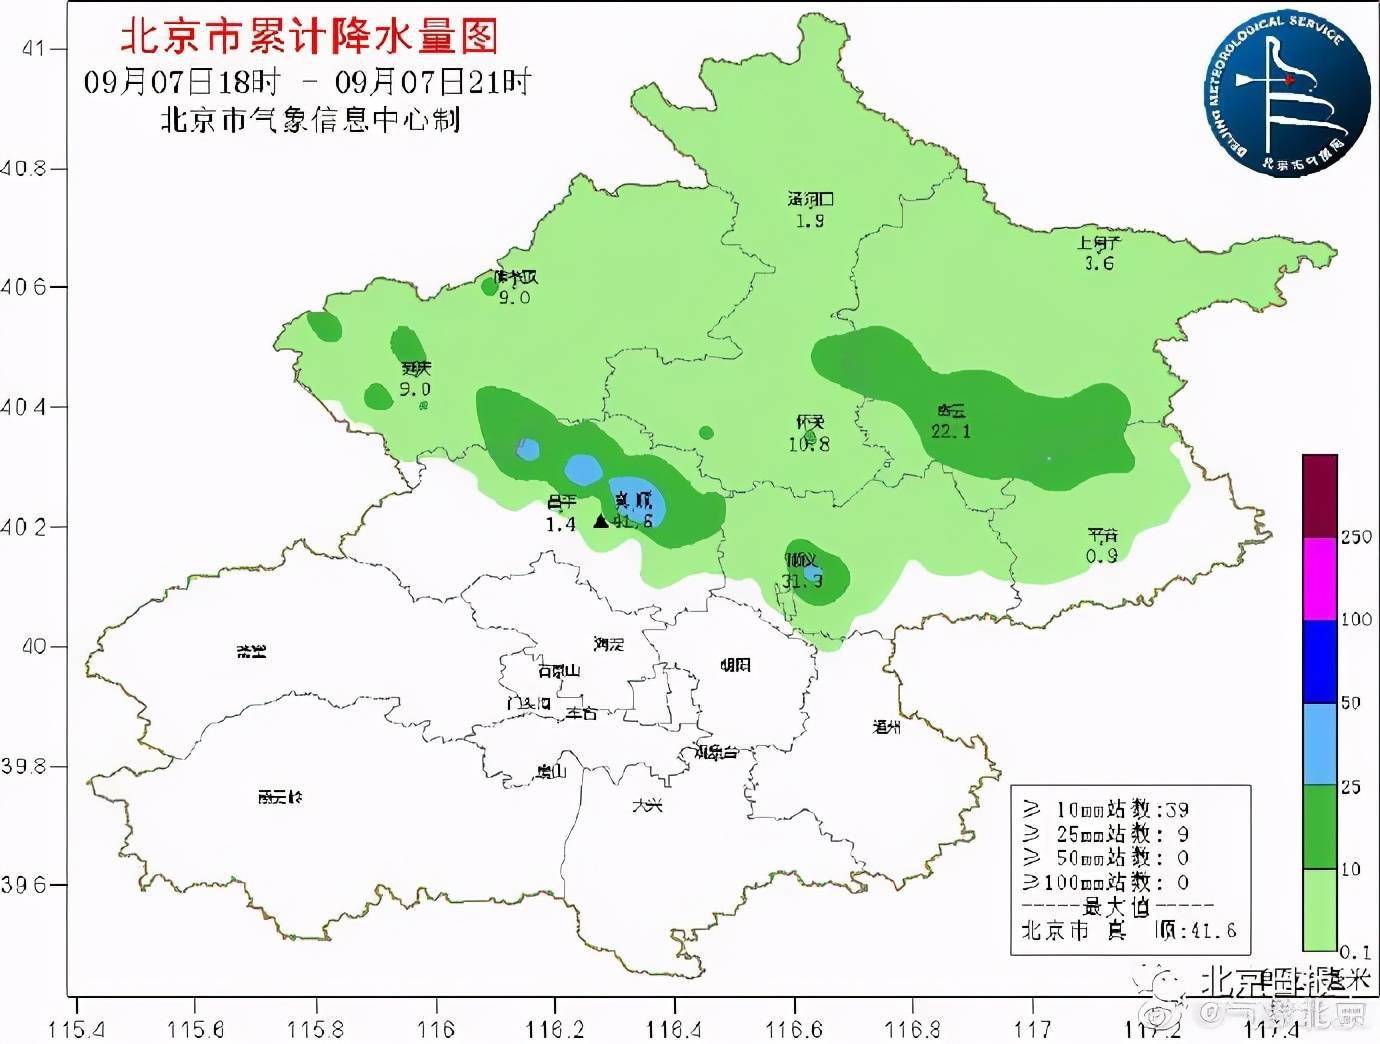 多警齐发!今夜北京雷雨 冰雹 大风,明天这里还有雨